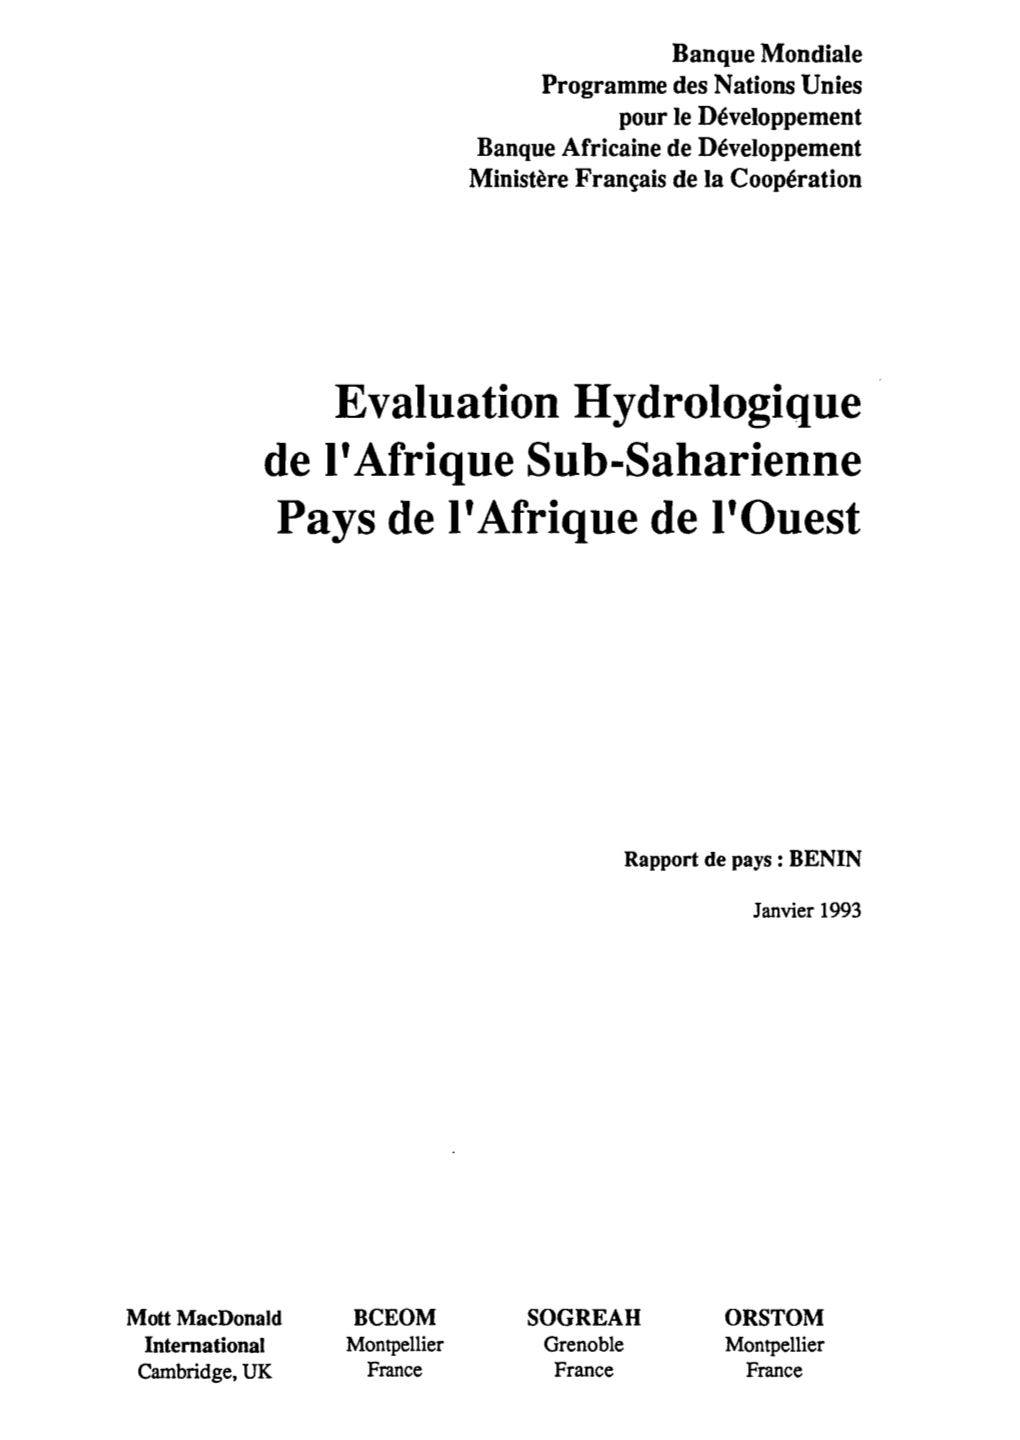 Evaluation Hydrologique De L'afrique Sub-Saharienne. Pays De L'afrique De L'ouest. Rapport De Pays : Bénin